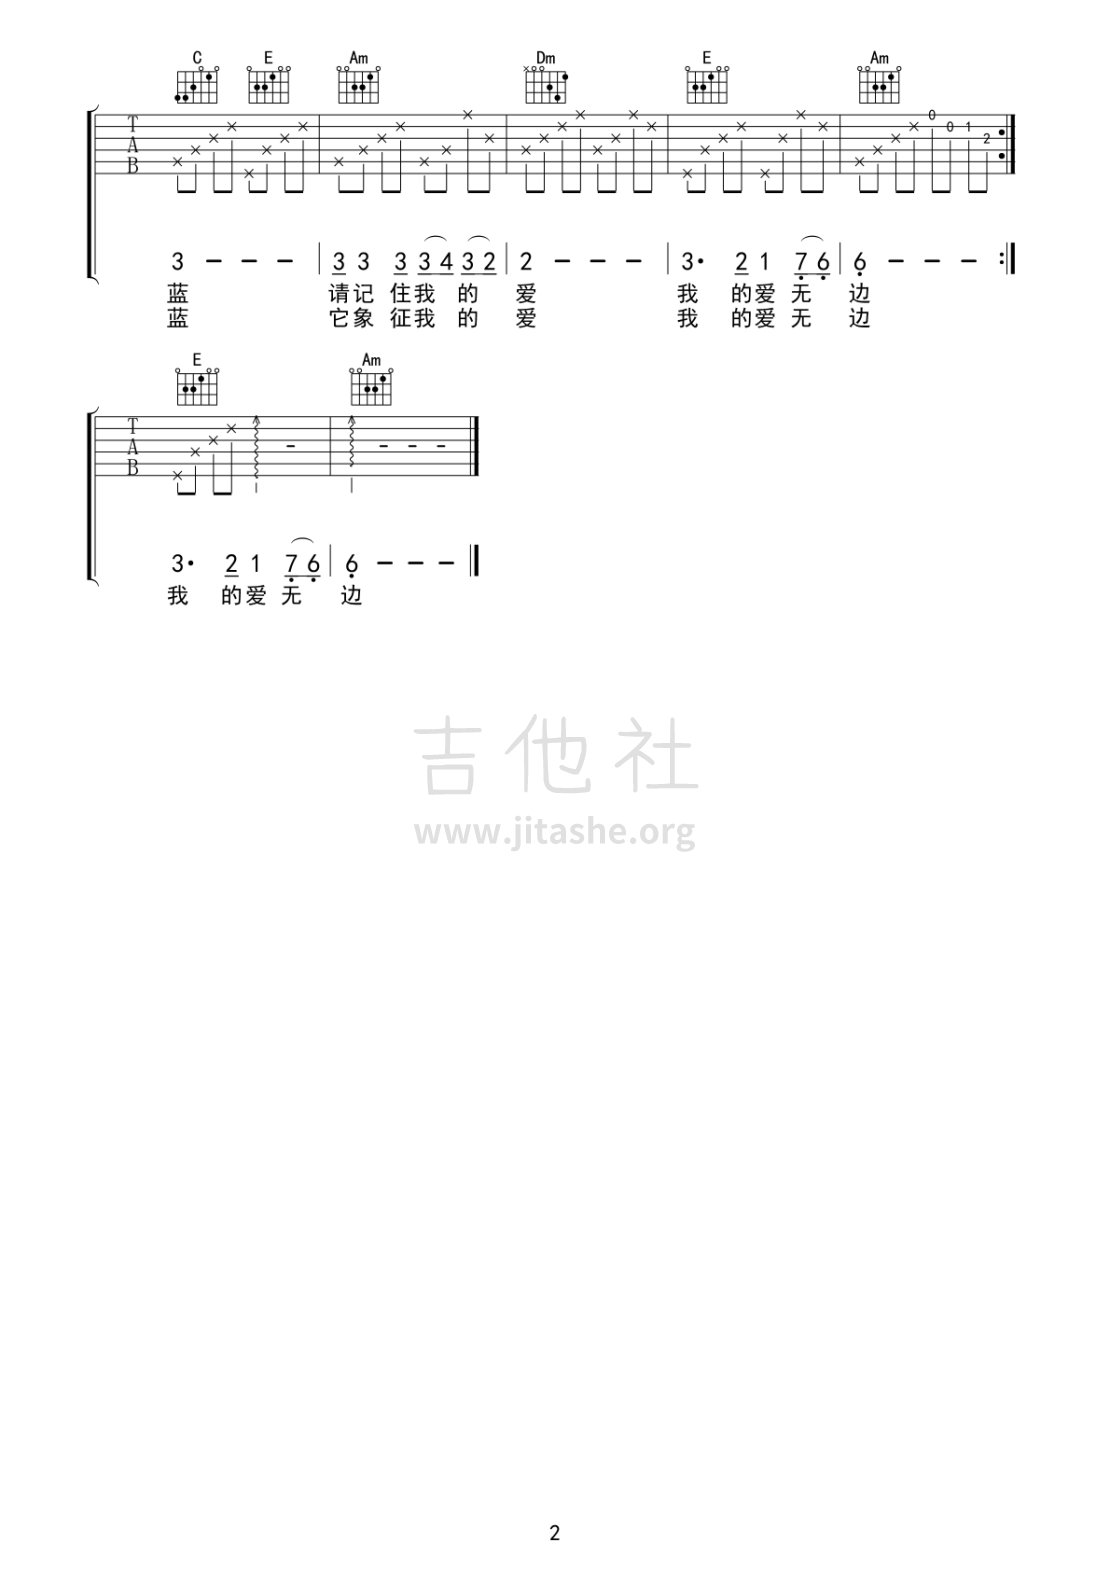 蓝宝石吉他谱(图片谱)_群星(Various Artists)_蓝宝石02.gif